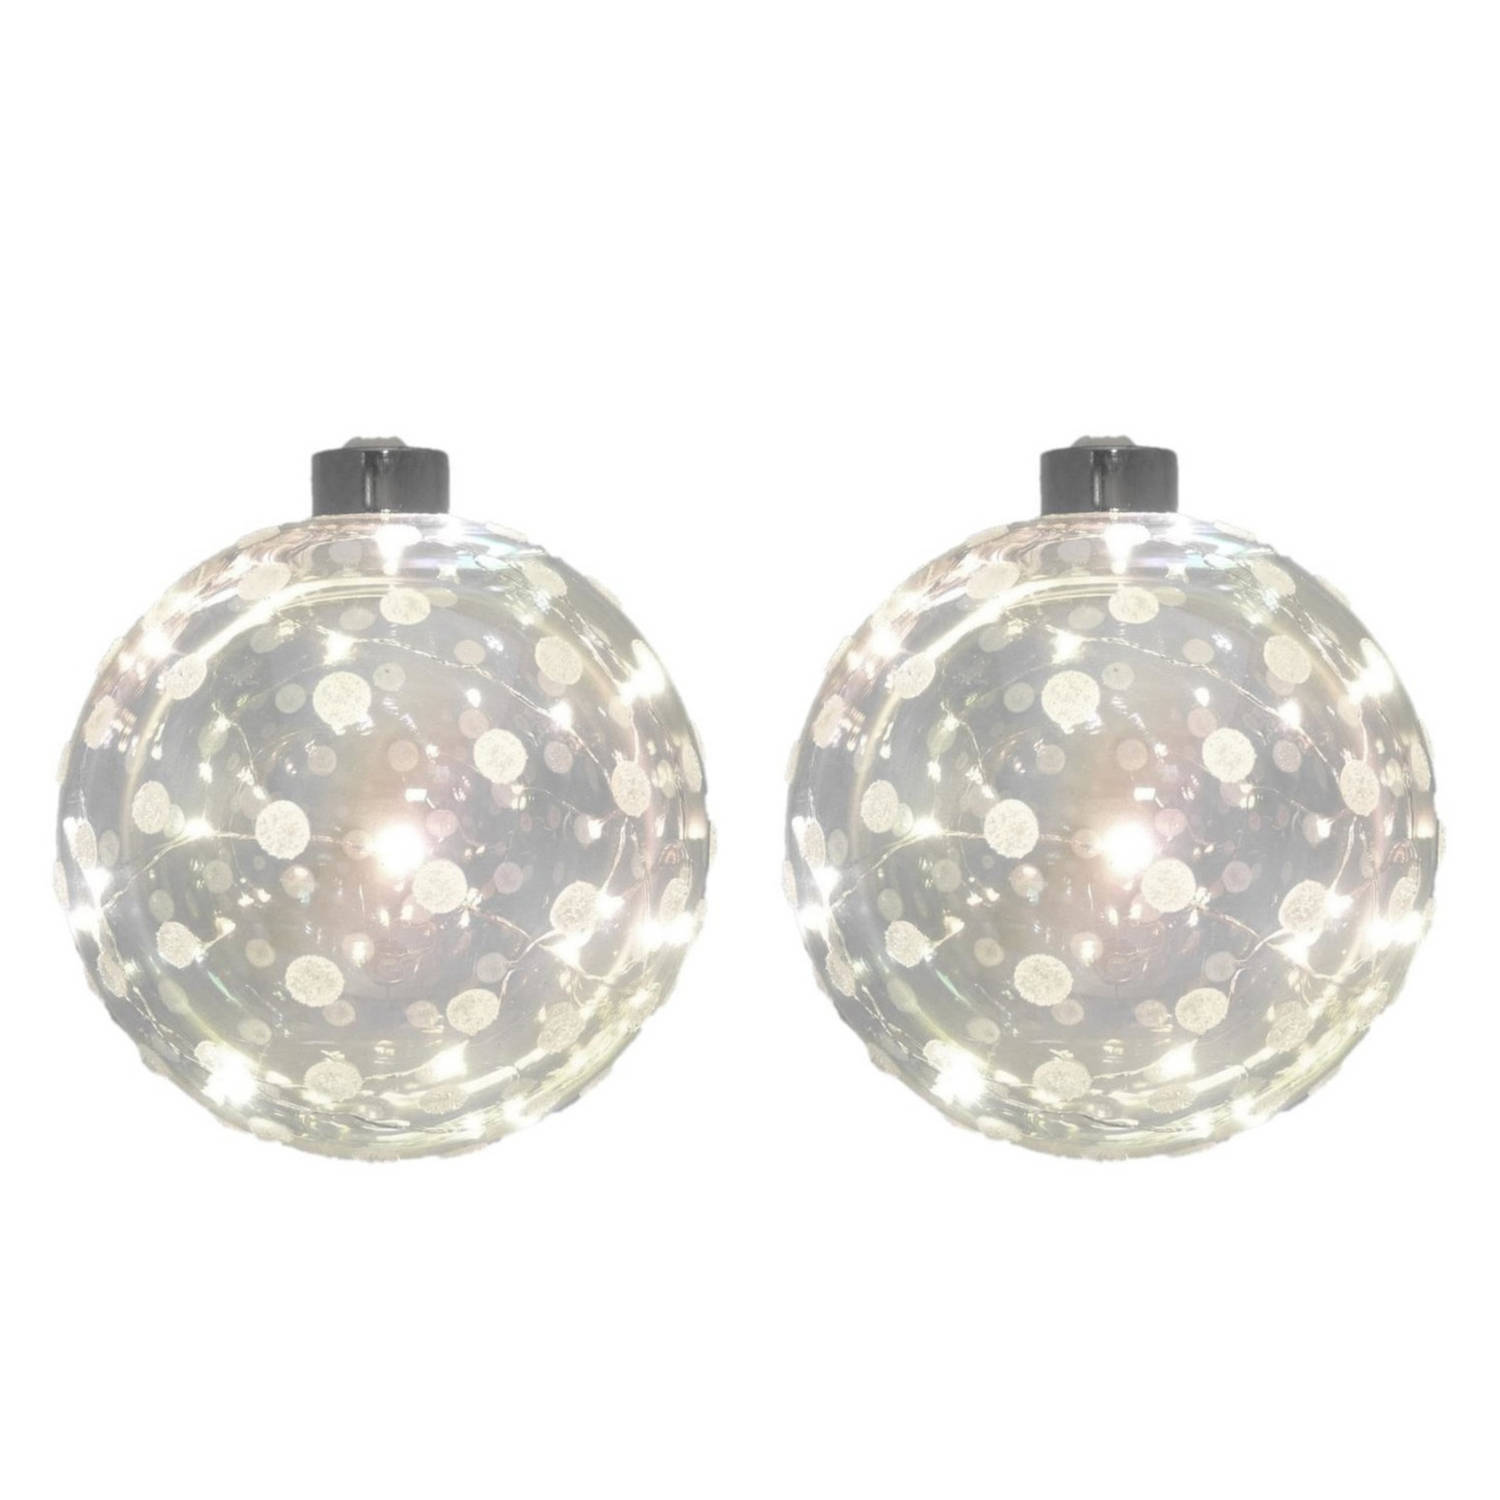 3x Glazen Decoratie Kerstballen Met 20 Led Lampjes Verlichting 12 Cm Kerstversiering-kerstdecoratie